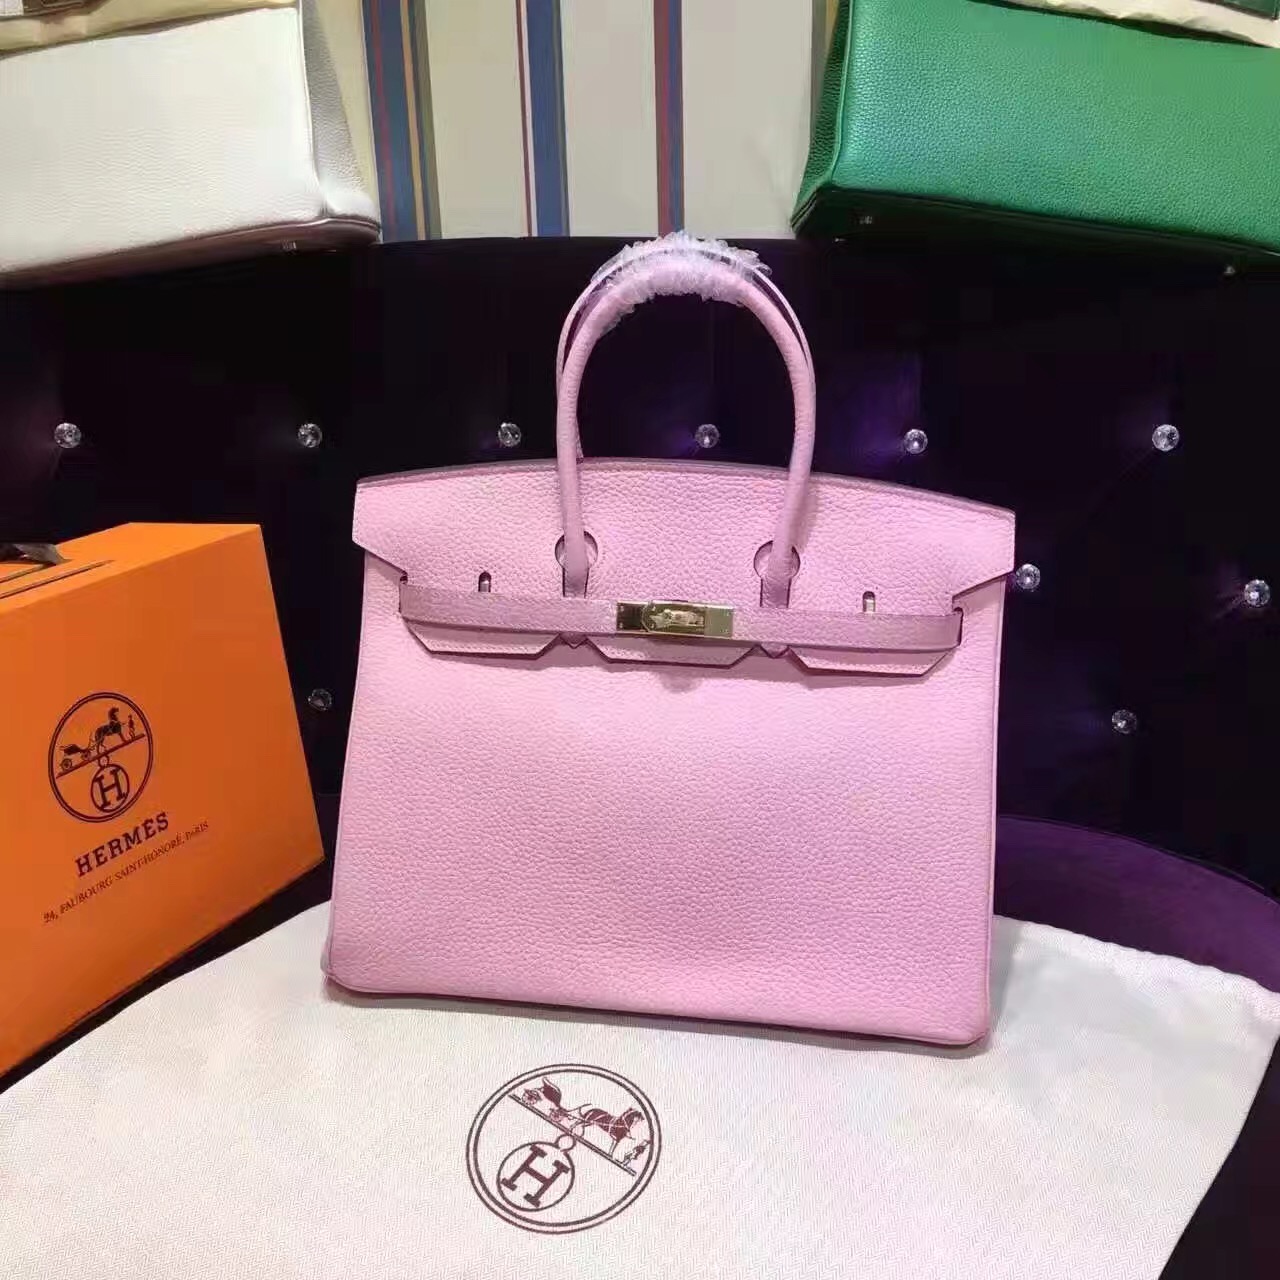 Hermes Birkin grain pink handbags